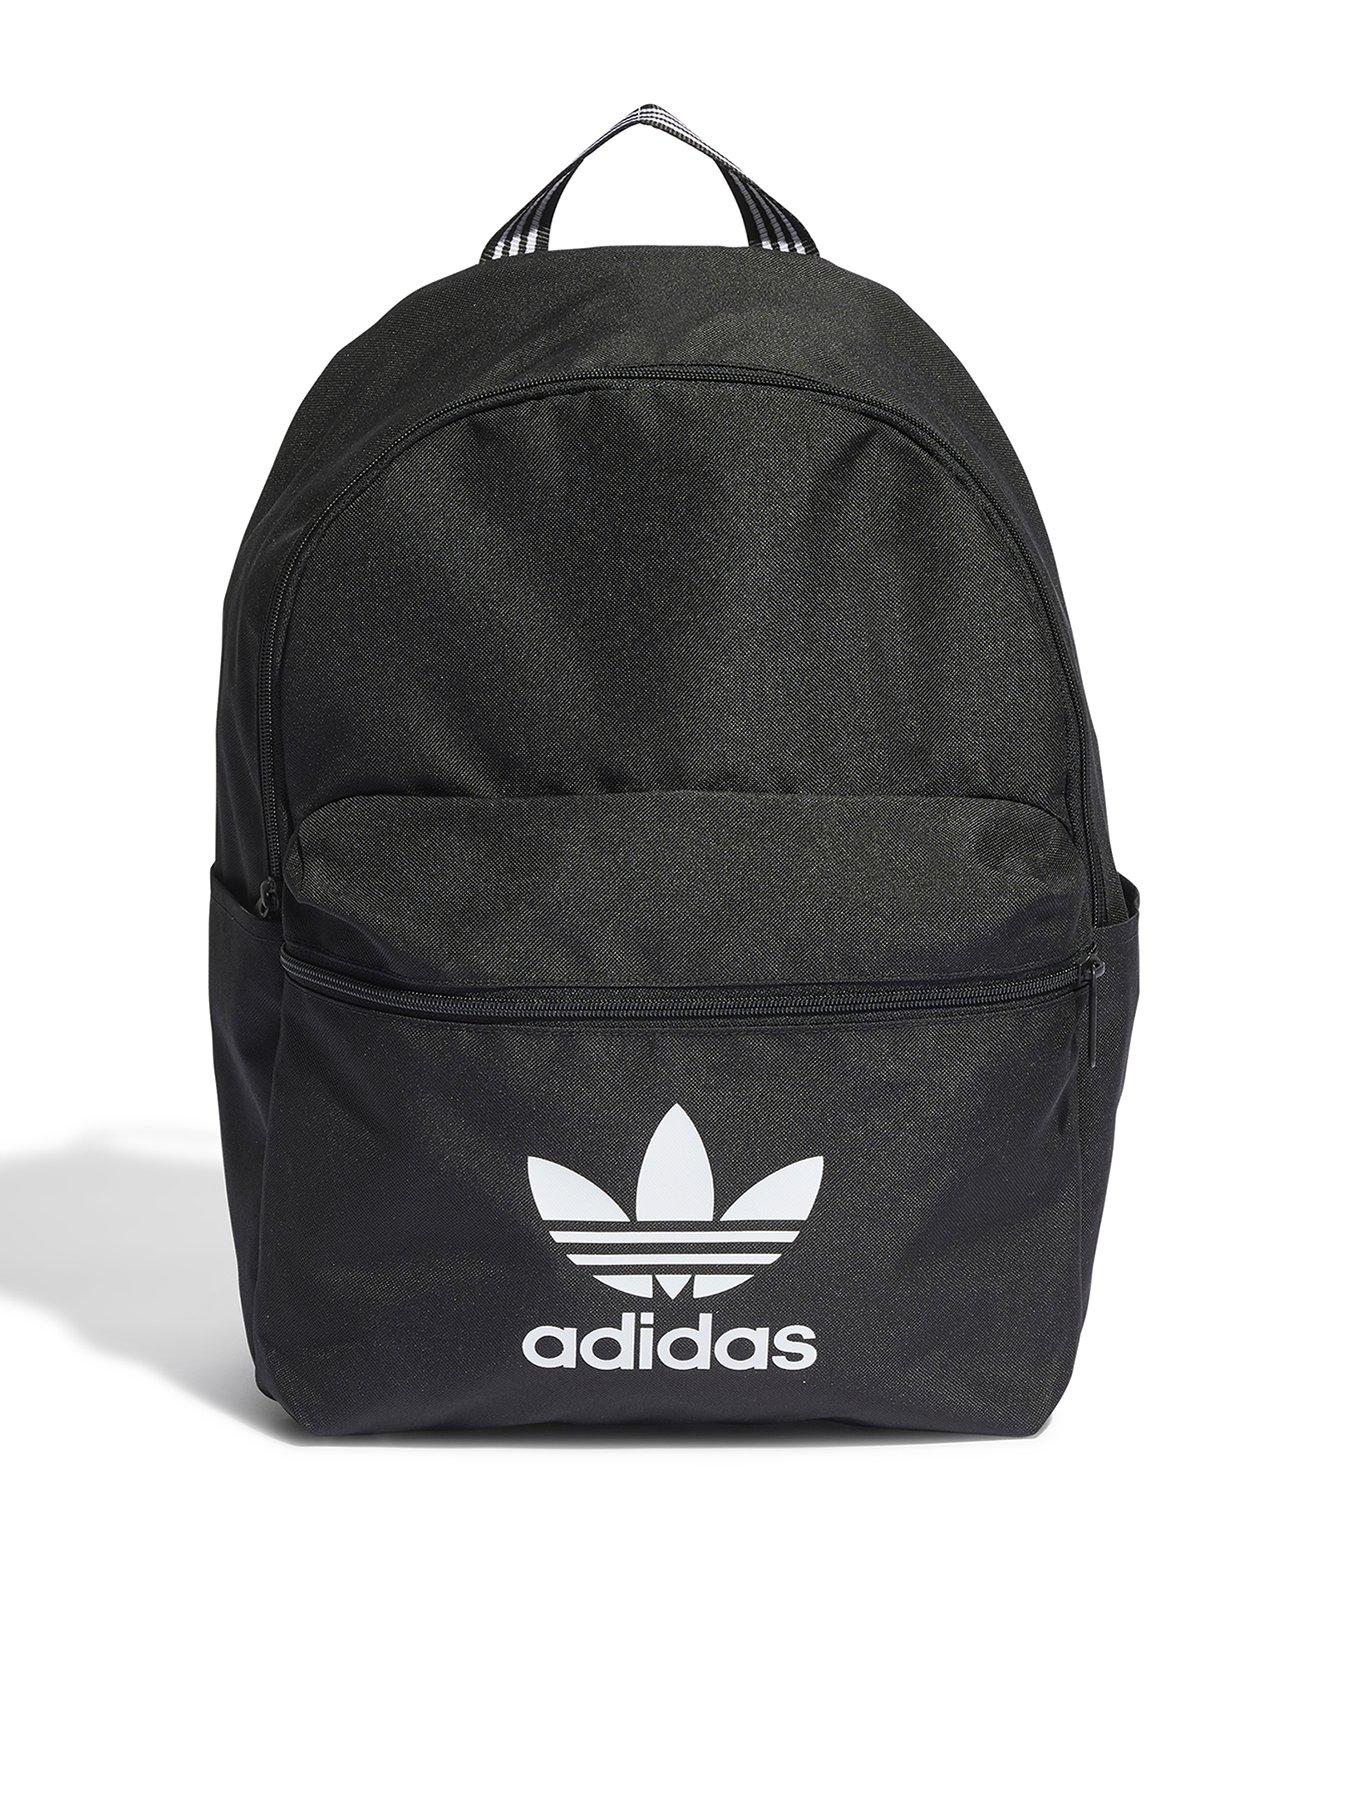 Adidas Originals Adicolor Backpack - Black/White